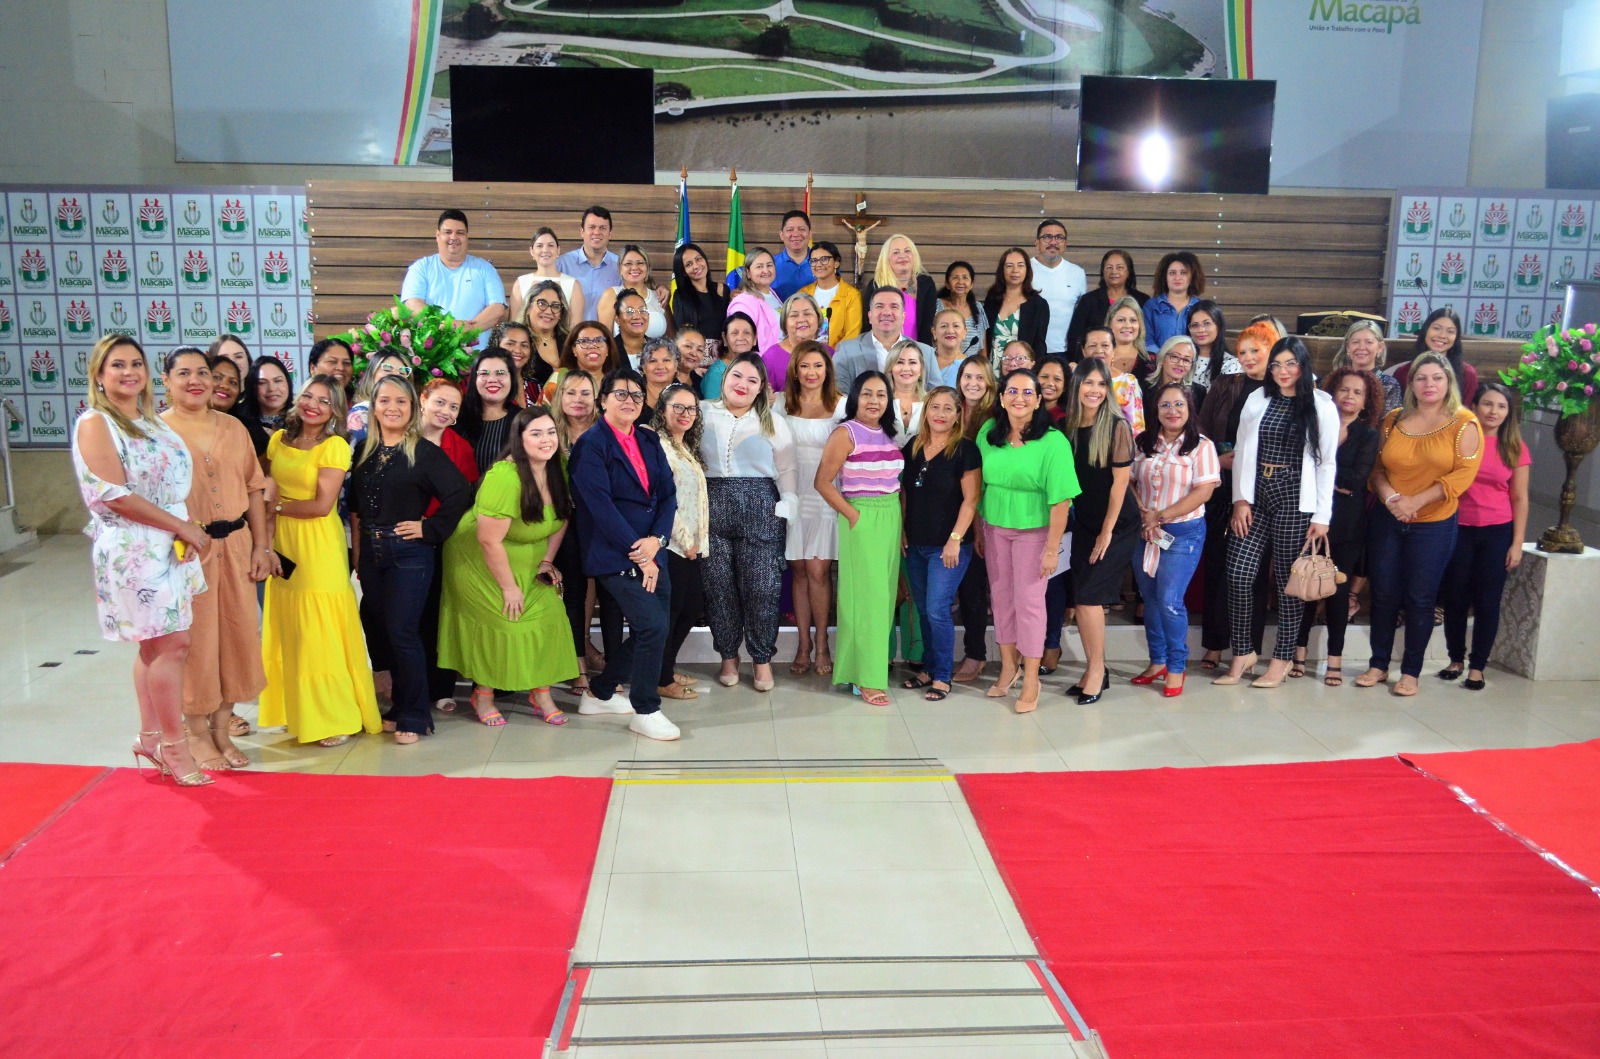 Mulheres são homenageadas na Câmara Municipal de Macapá